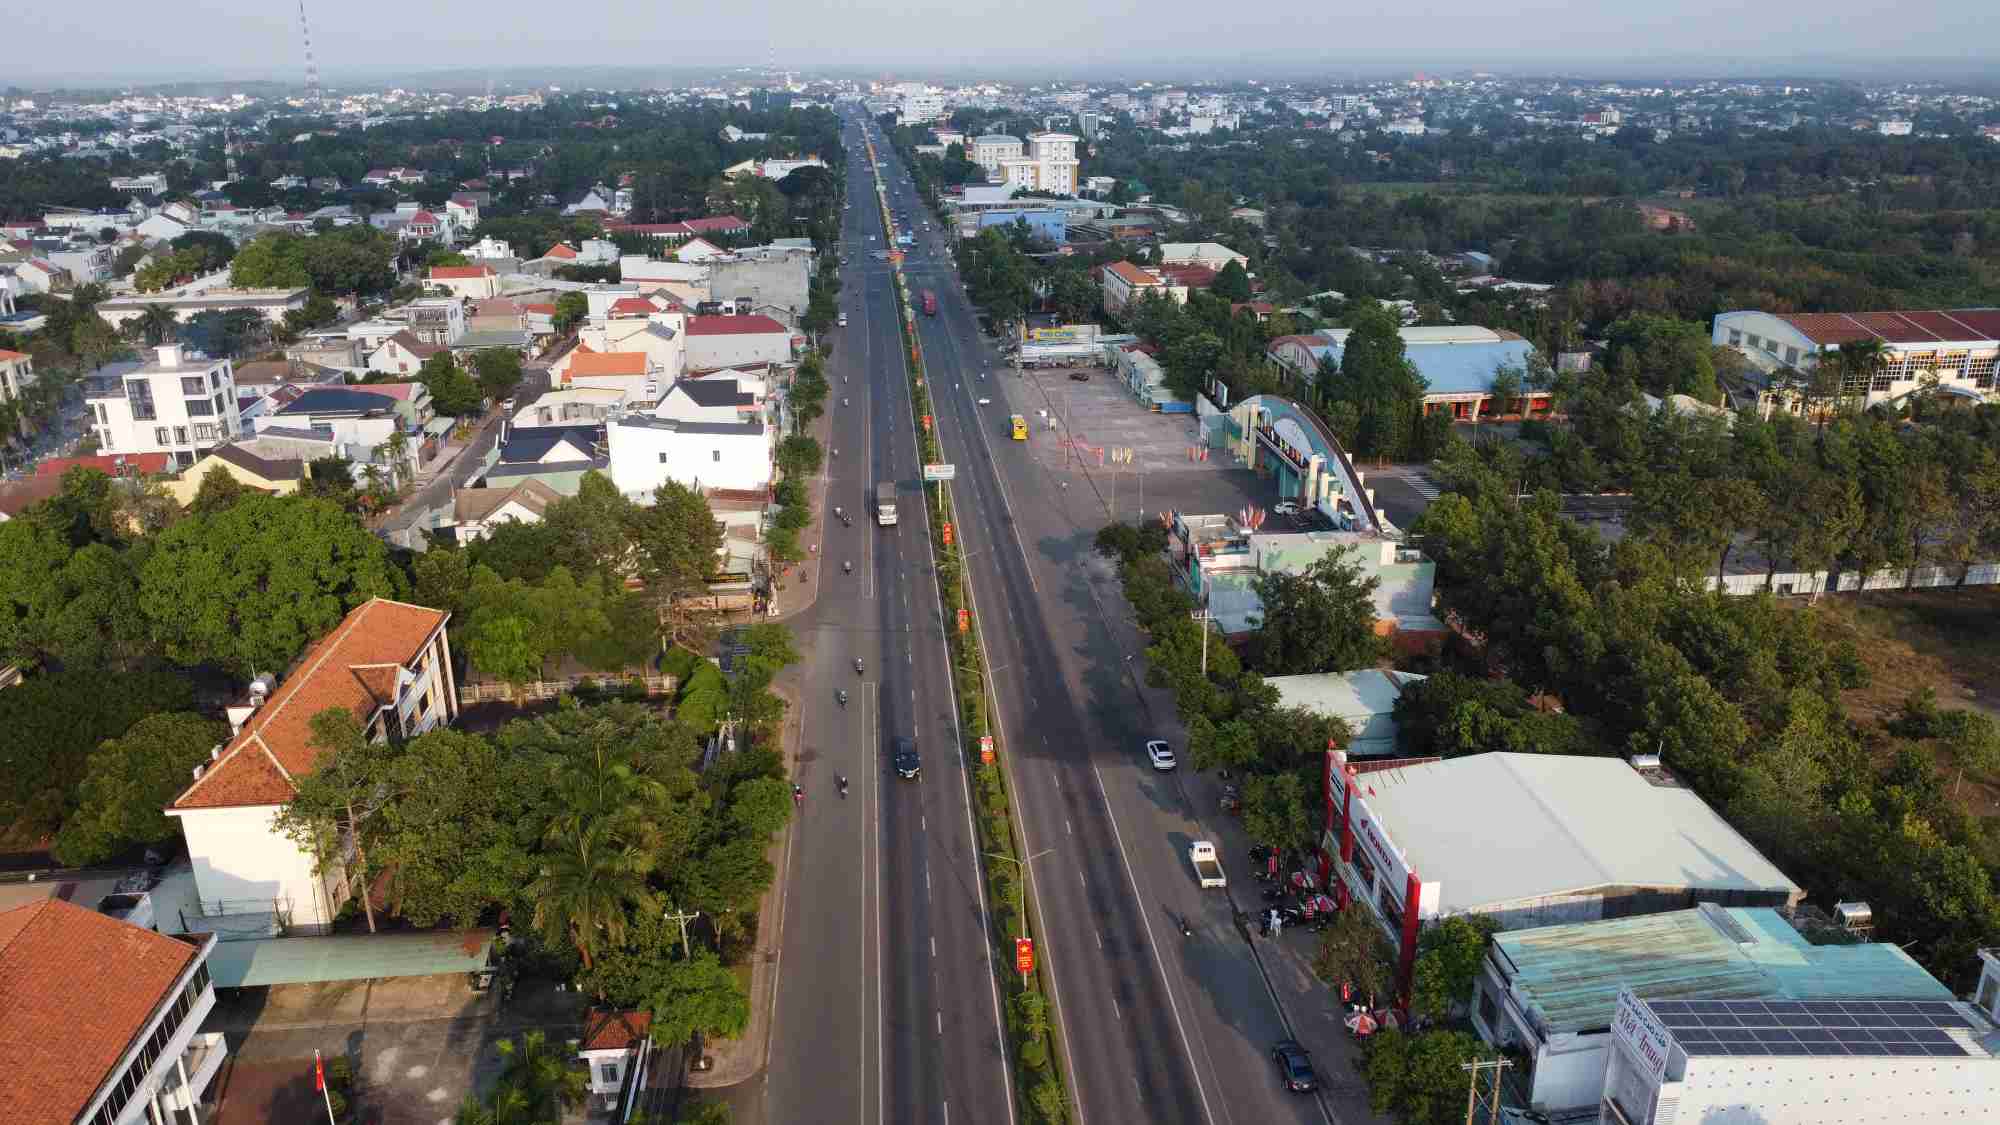 Trong khi đó, quốc lộ 14 qua thành phố Đồng Xoài, tỉnh Bình Phước được mở rộng hơn. Đây là khu vực phát triển đô thị mạnh và nhanh nhất ở tỉnh Bình Phước.